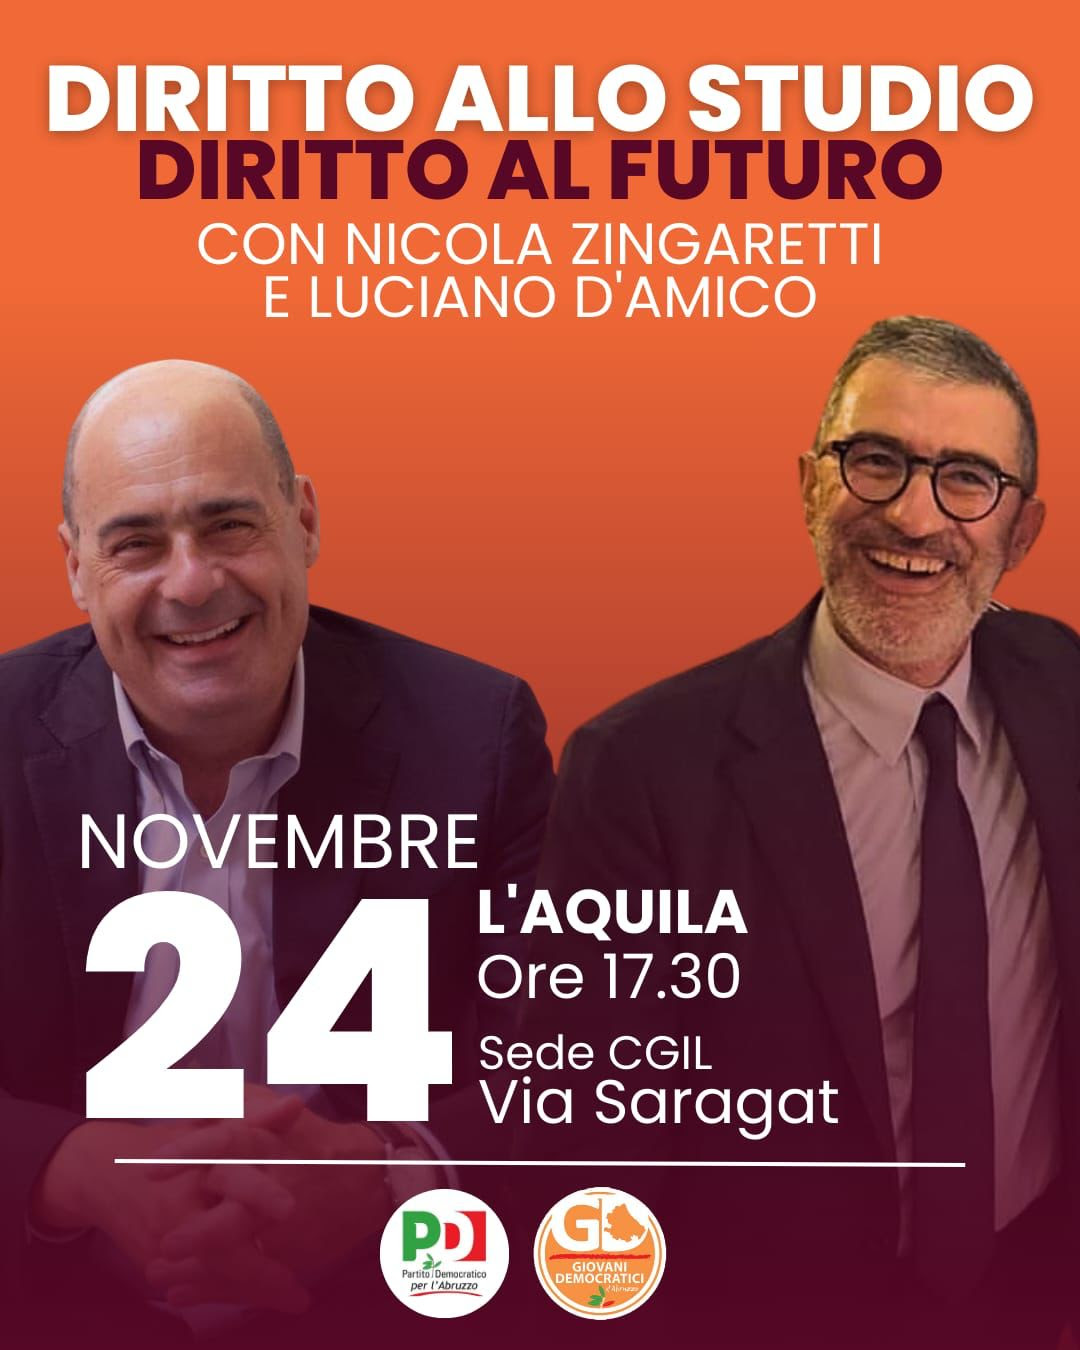 Il 24 novembre Nicola Zingaretti all’Aquila con Luciano D’Amico: “Diritto allo studio, diritto al futuro”